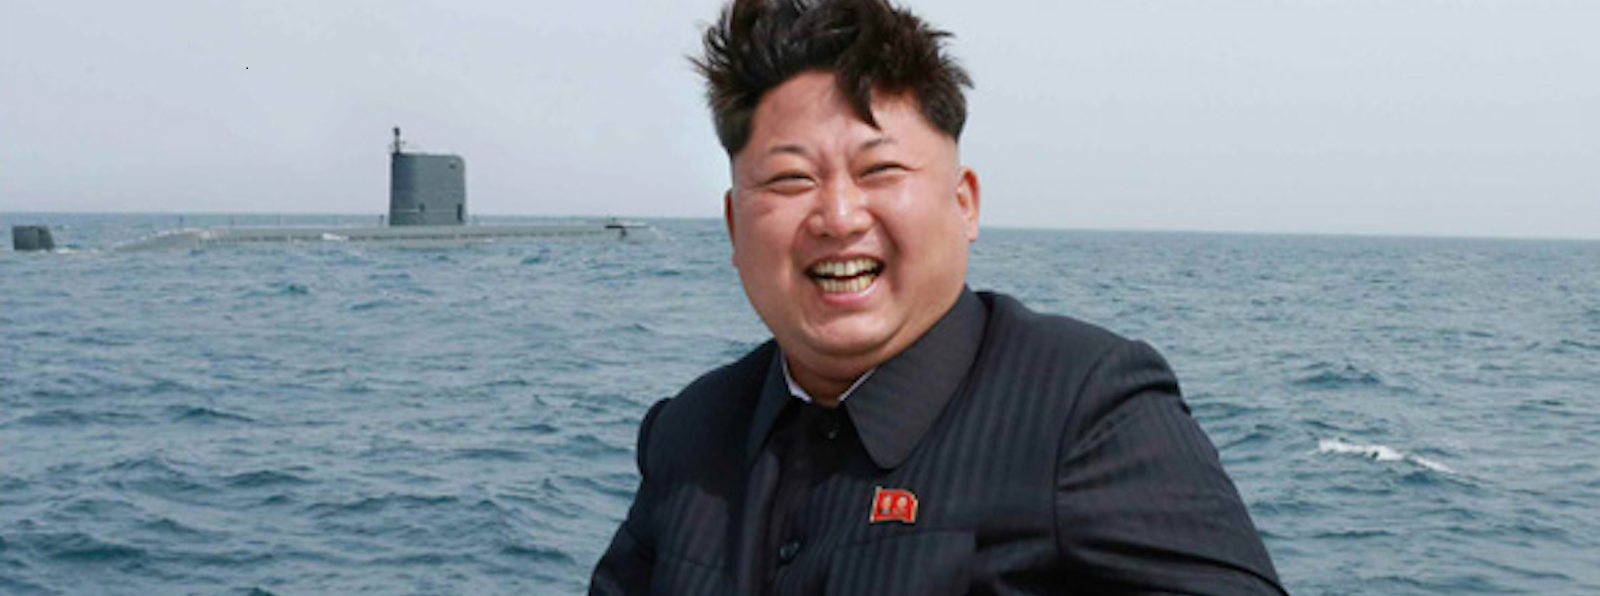 Cẩn thận - Triều Tiên chuẩn bị thử tên lửa tiếp?